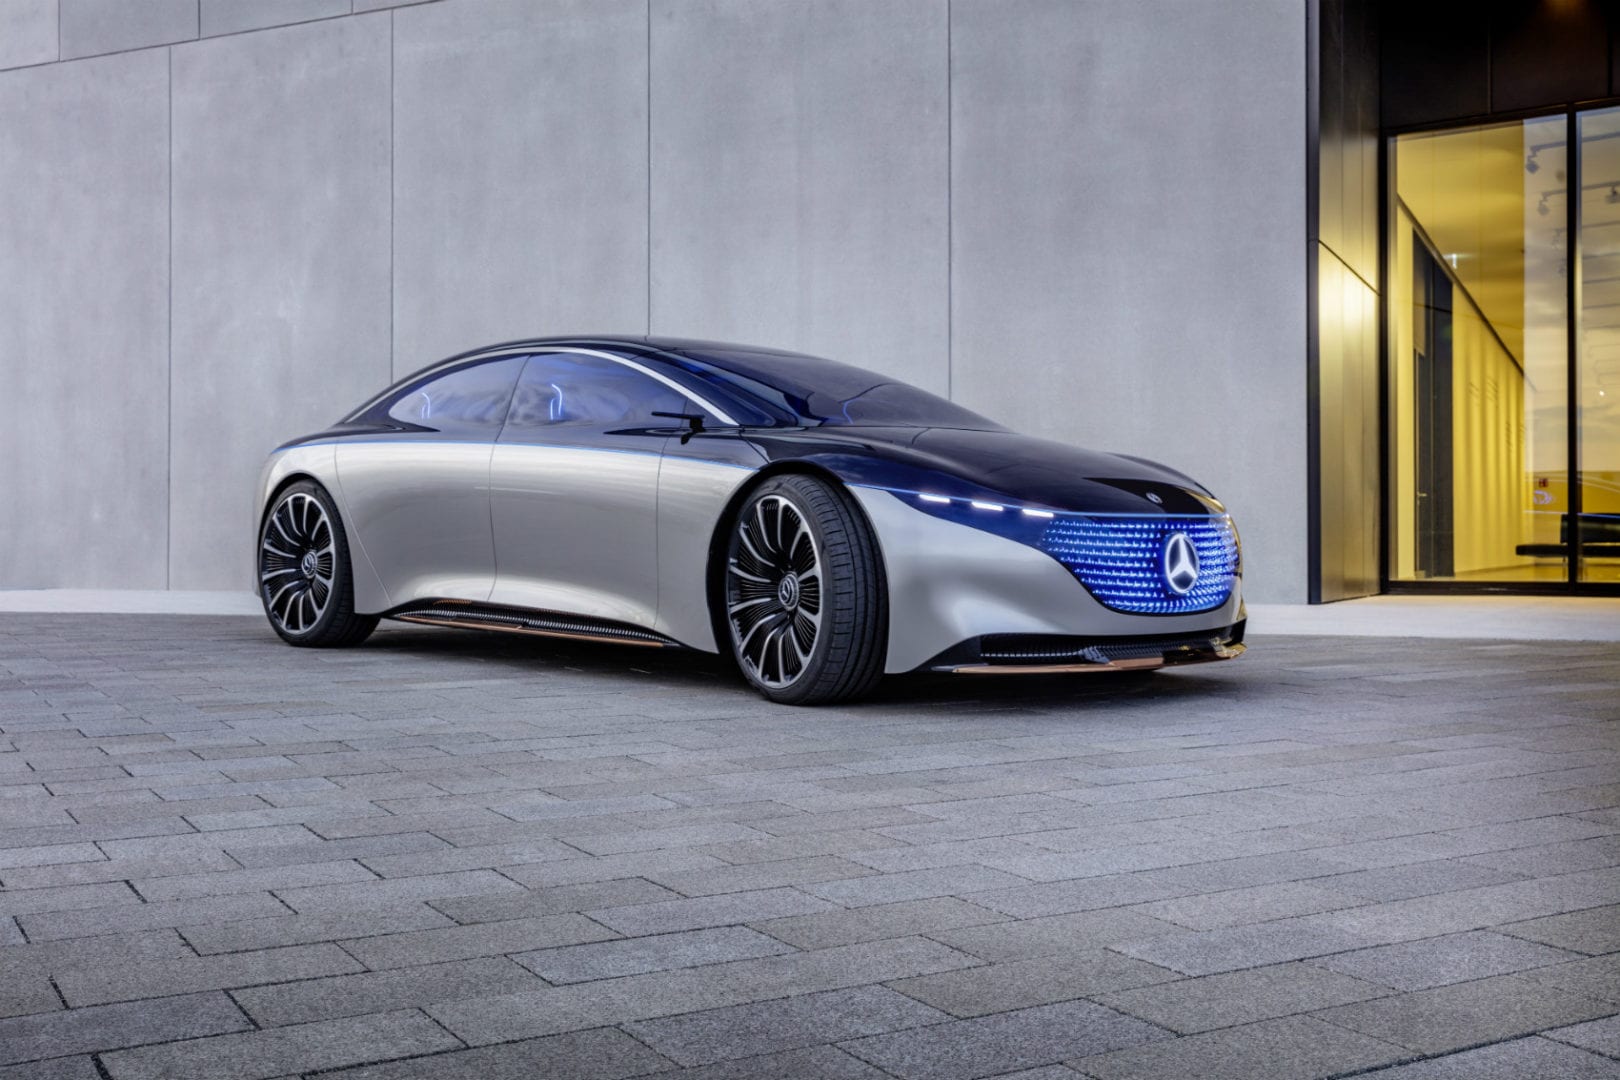 Apresentado no último Salão de Frankfurt, o Mercedes EQS será a variante elétrica de luxo do futuro Classe S